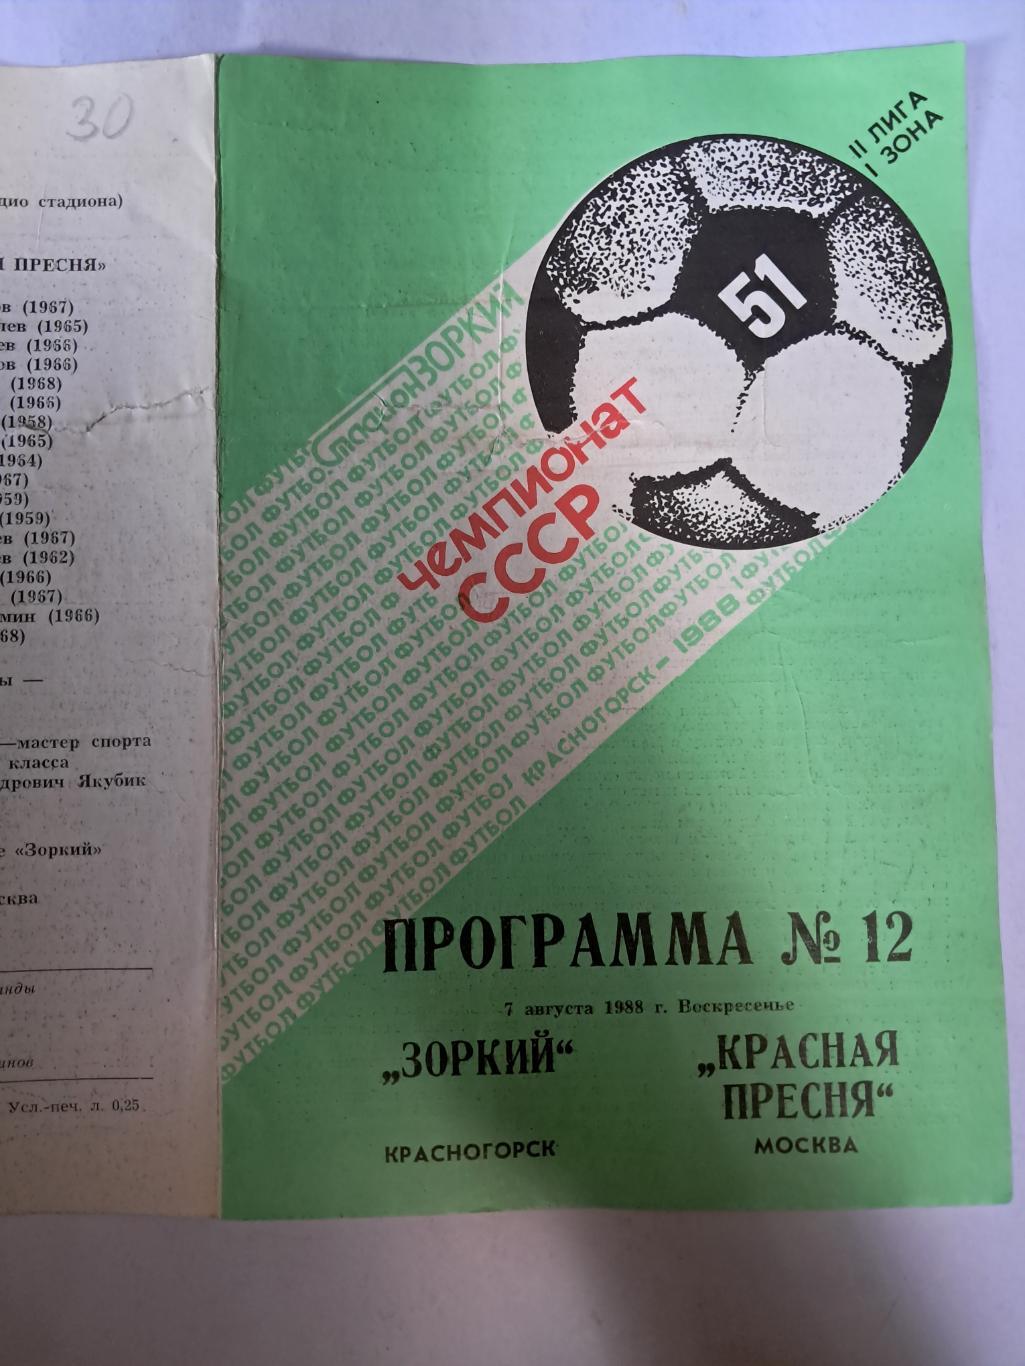 Зоркий Красногорск - Красная Пресня Москва 7.08.1988